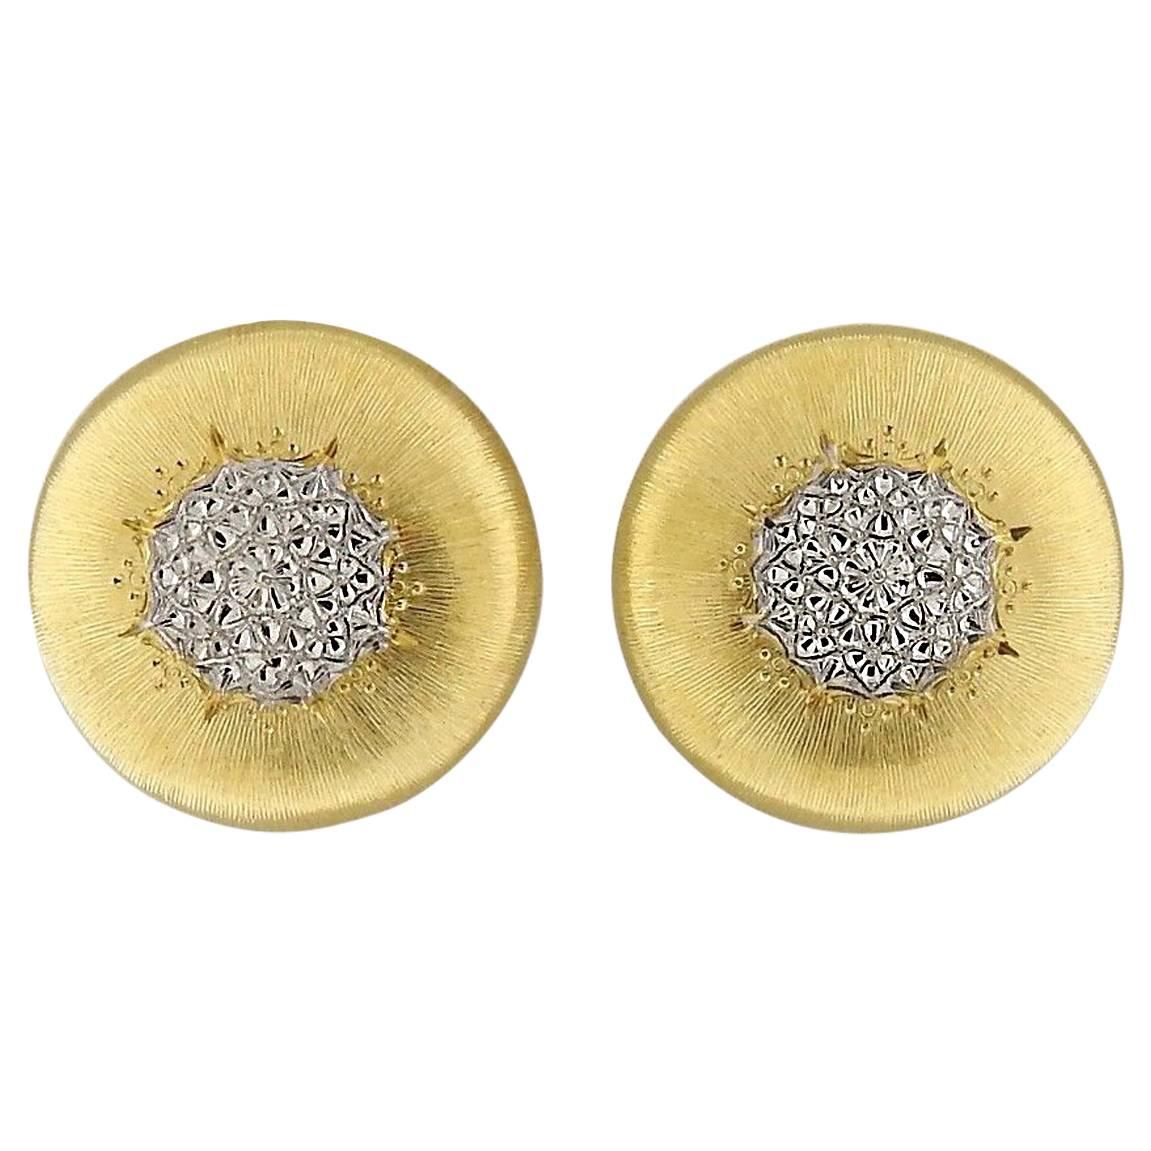 Buccellati Macri Gold Button Earrings